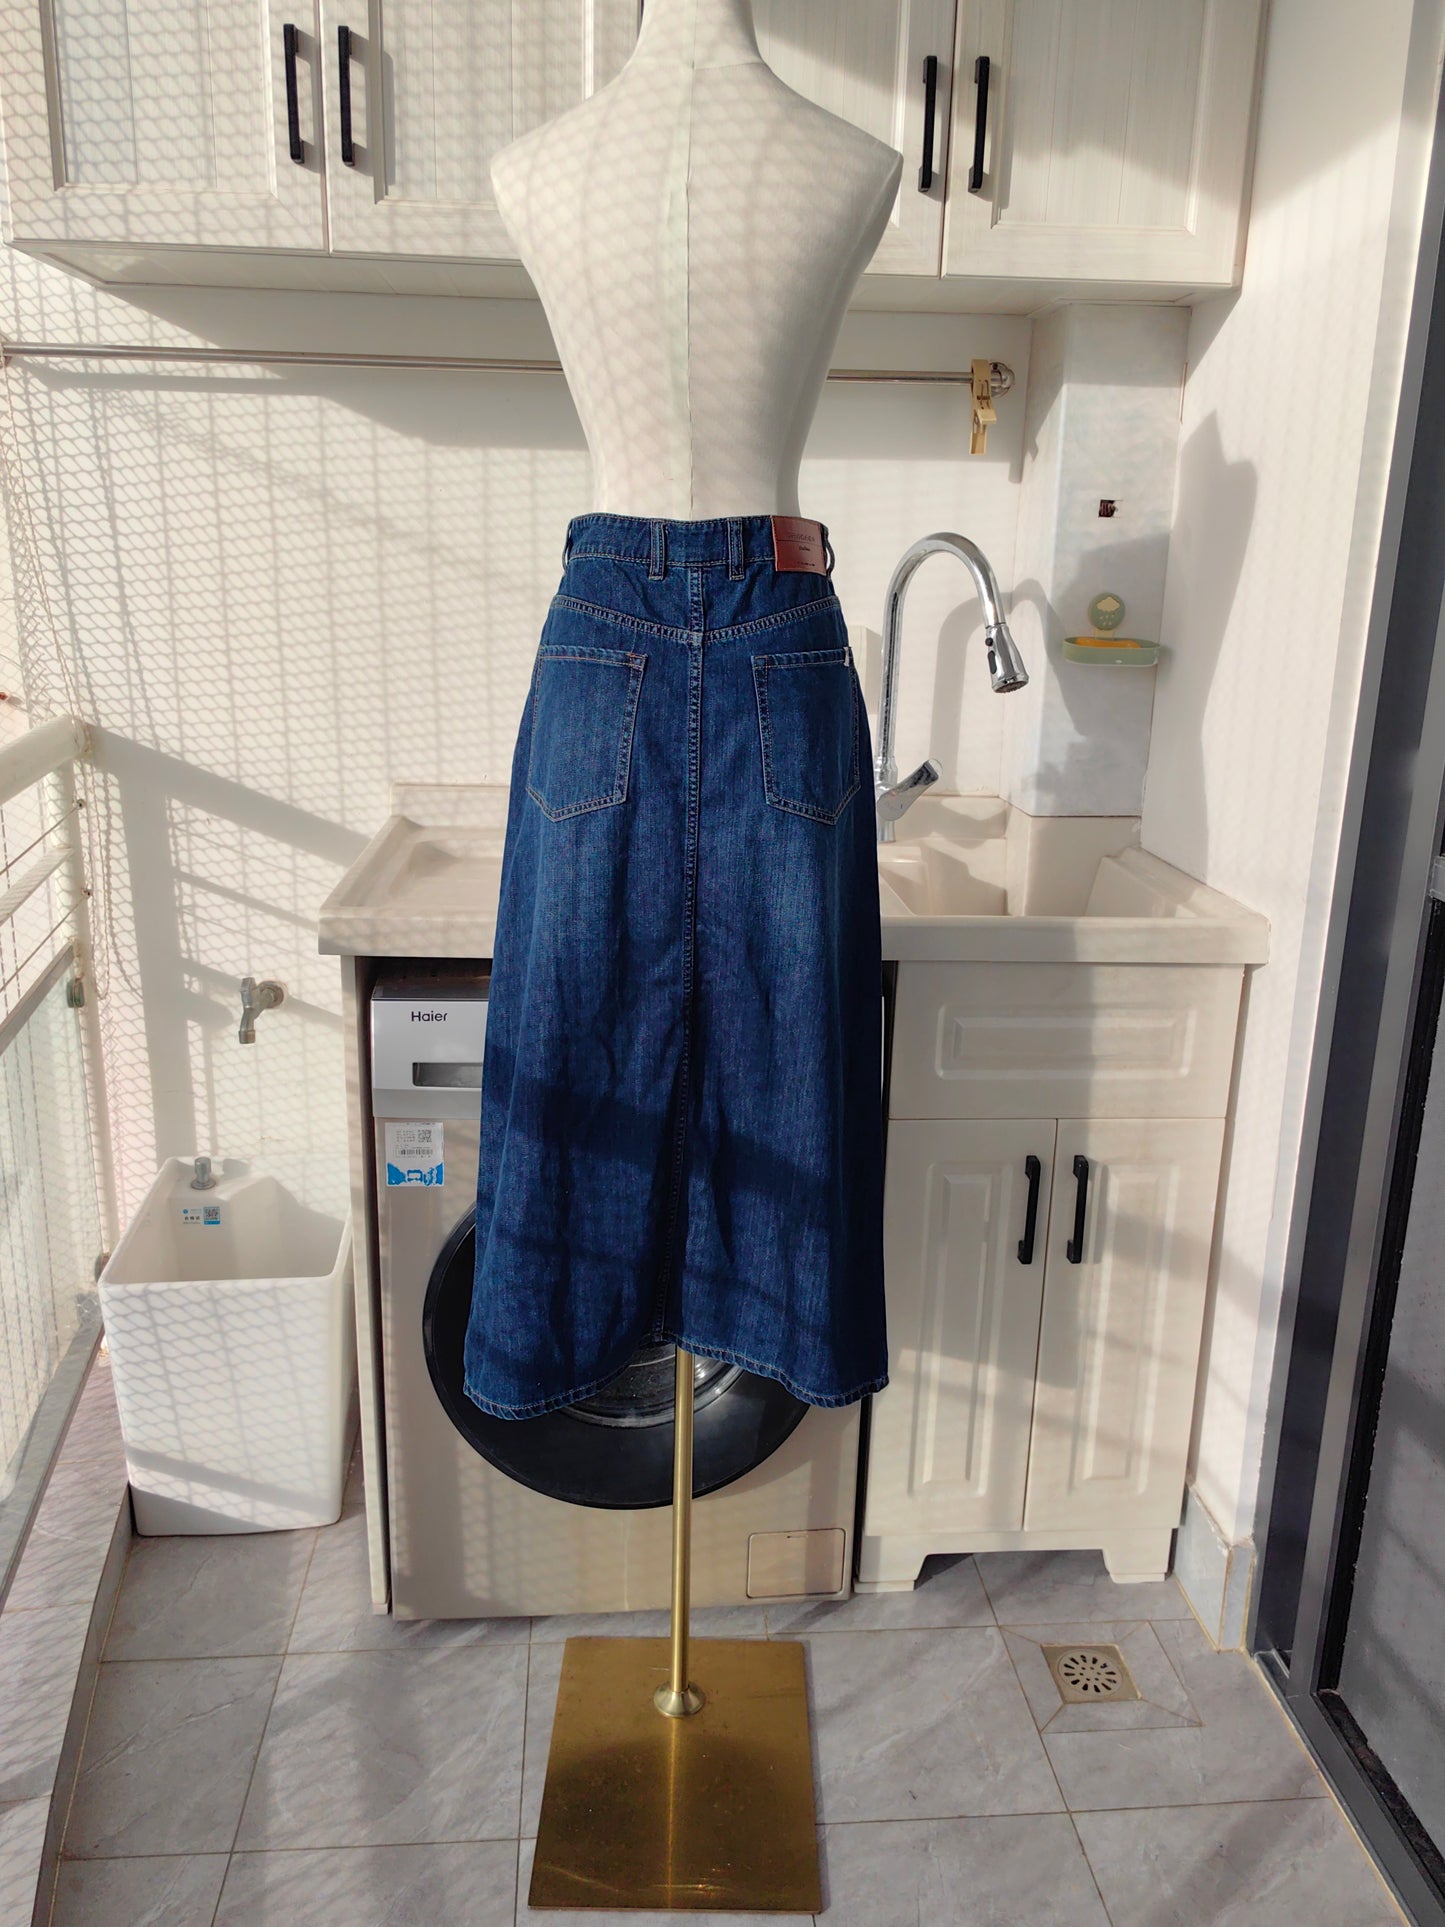 Mm weekend Denim cotton blend midi | mini skirt